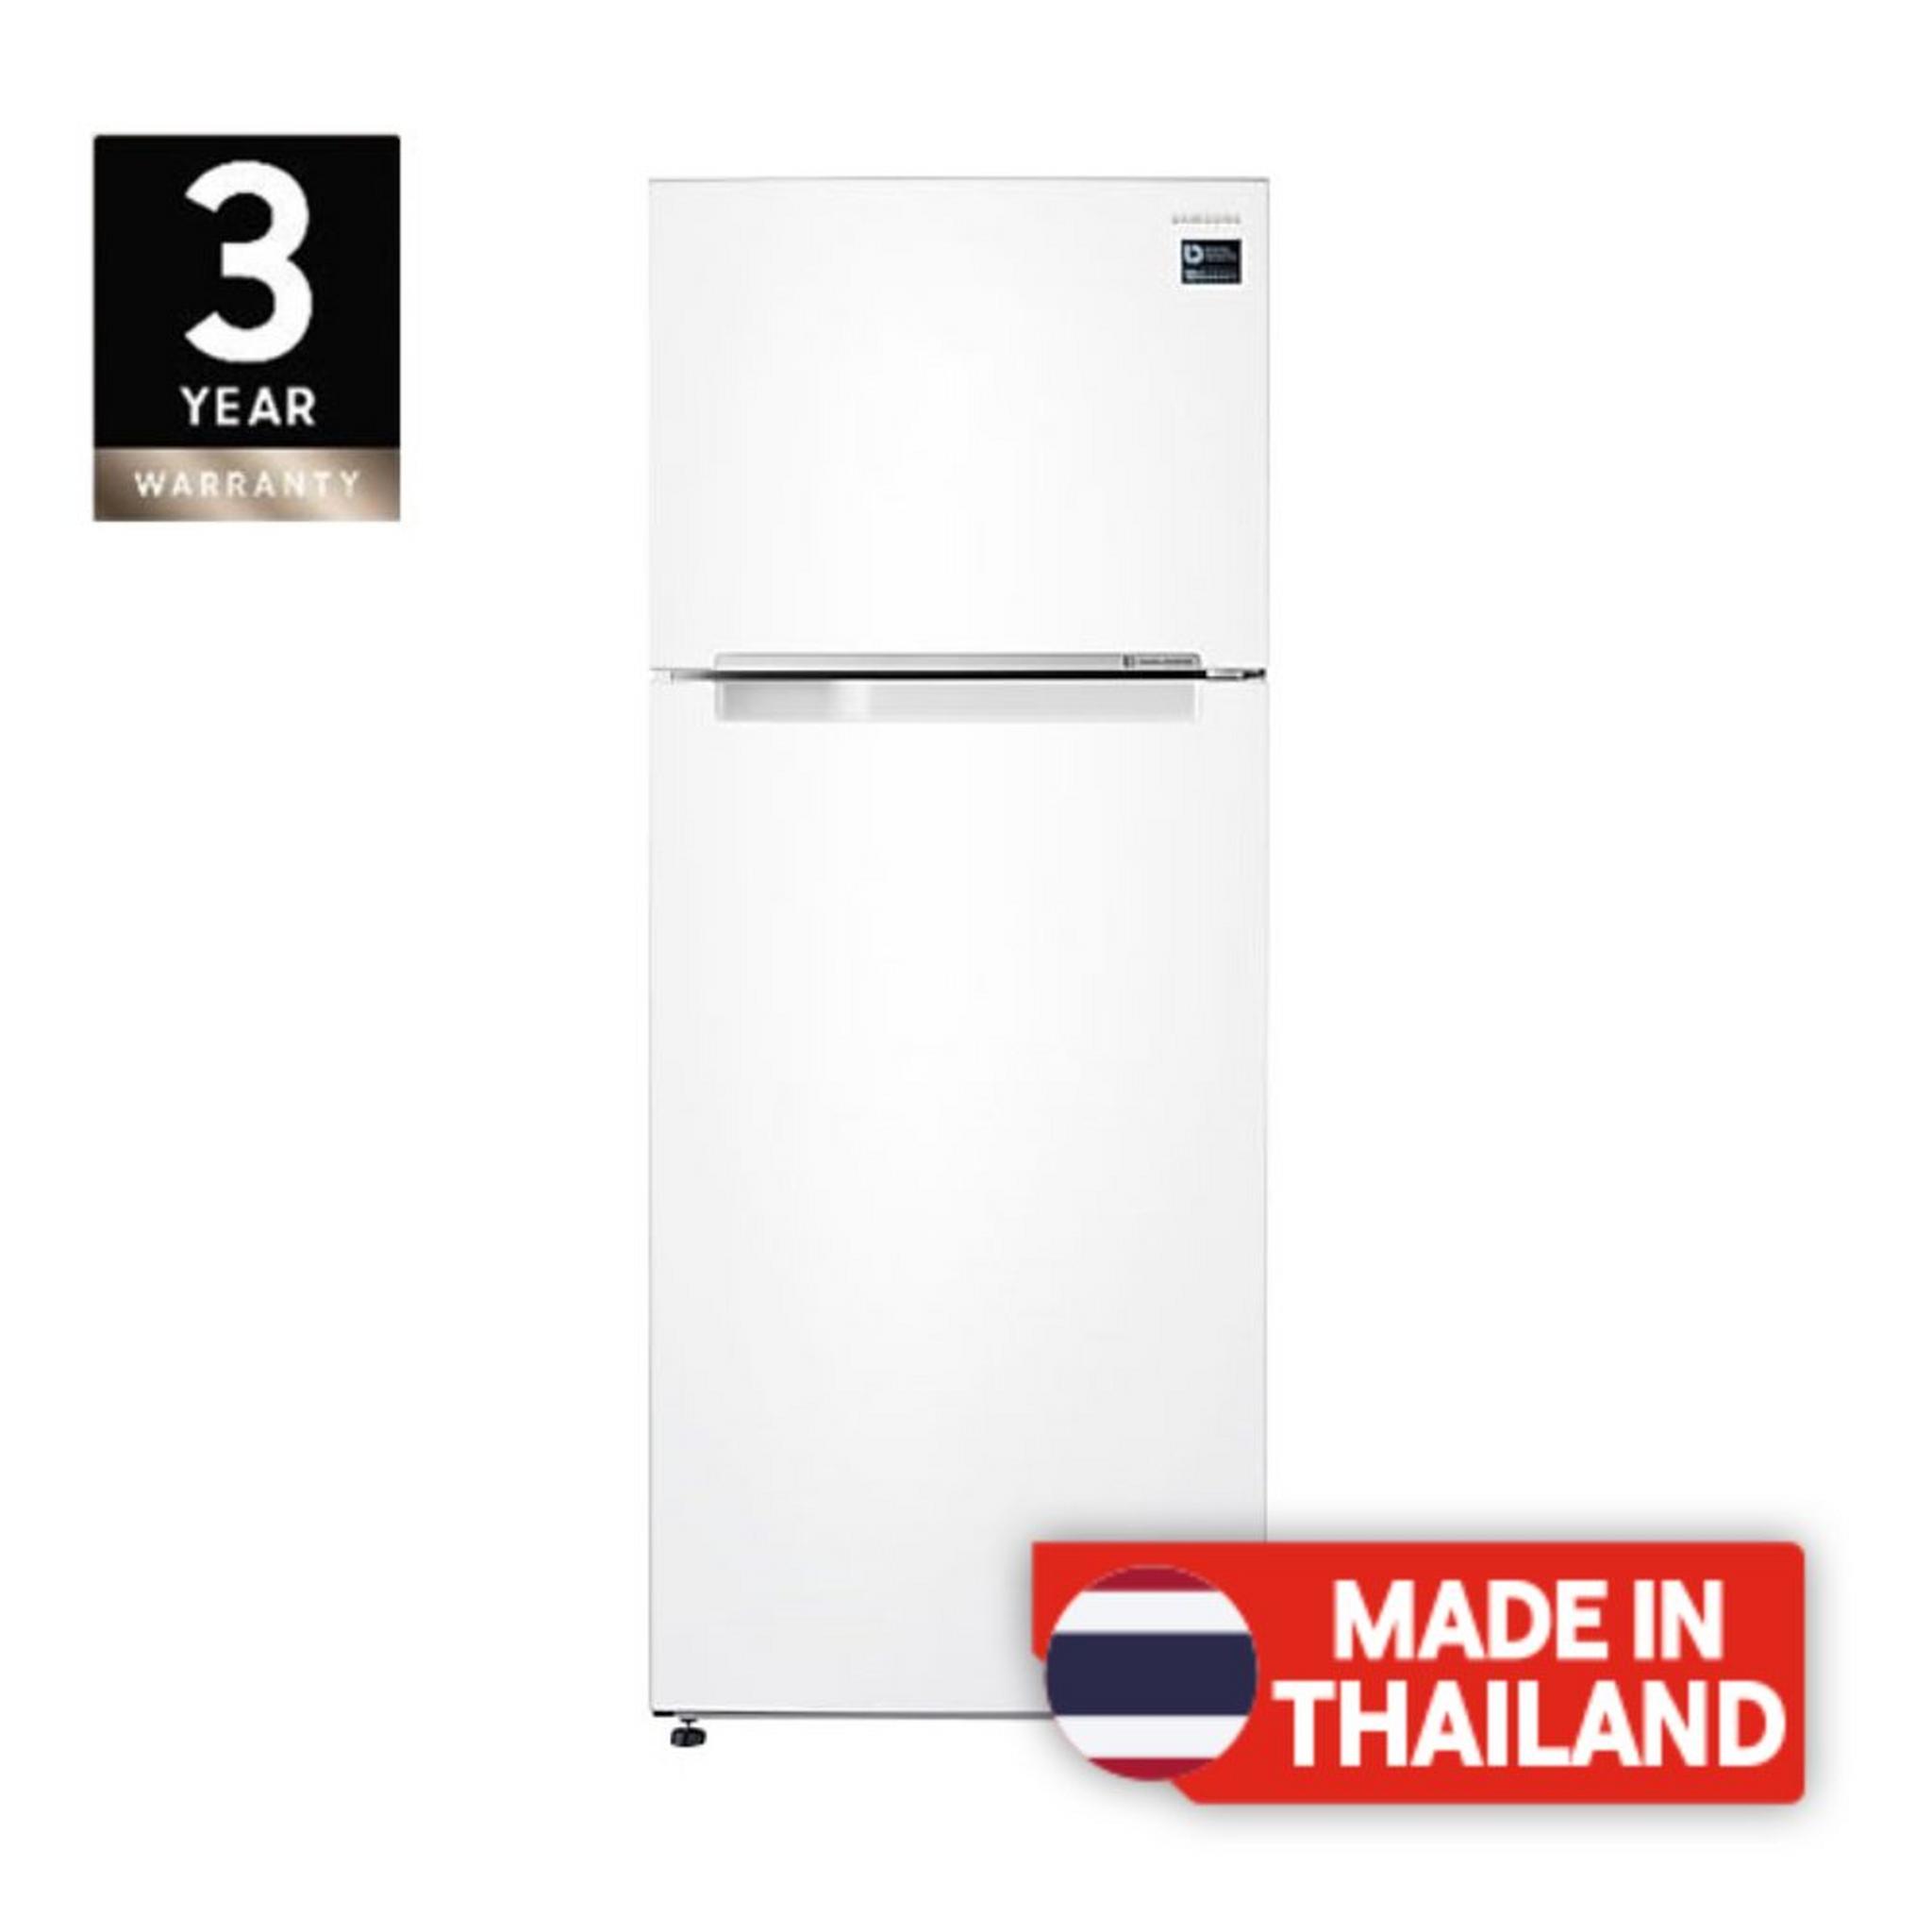 Samsung Top Mount Refrigerator, 21CFT, 600-Liters, RT60K6000WW - White